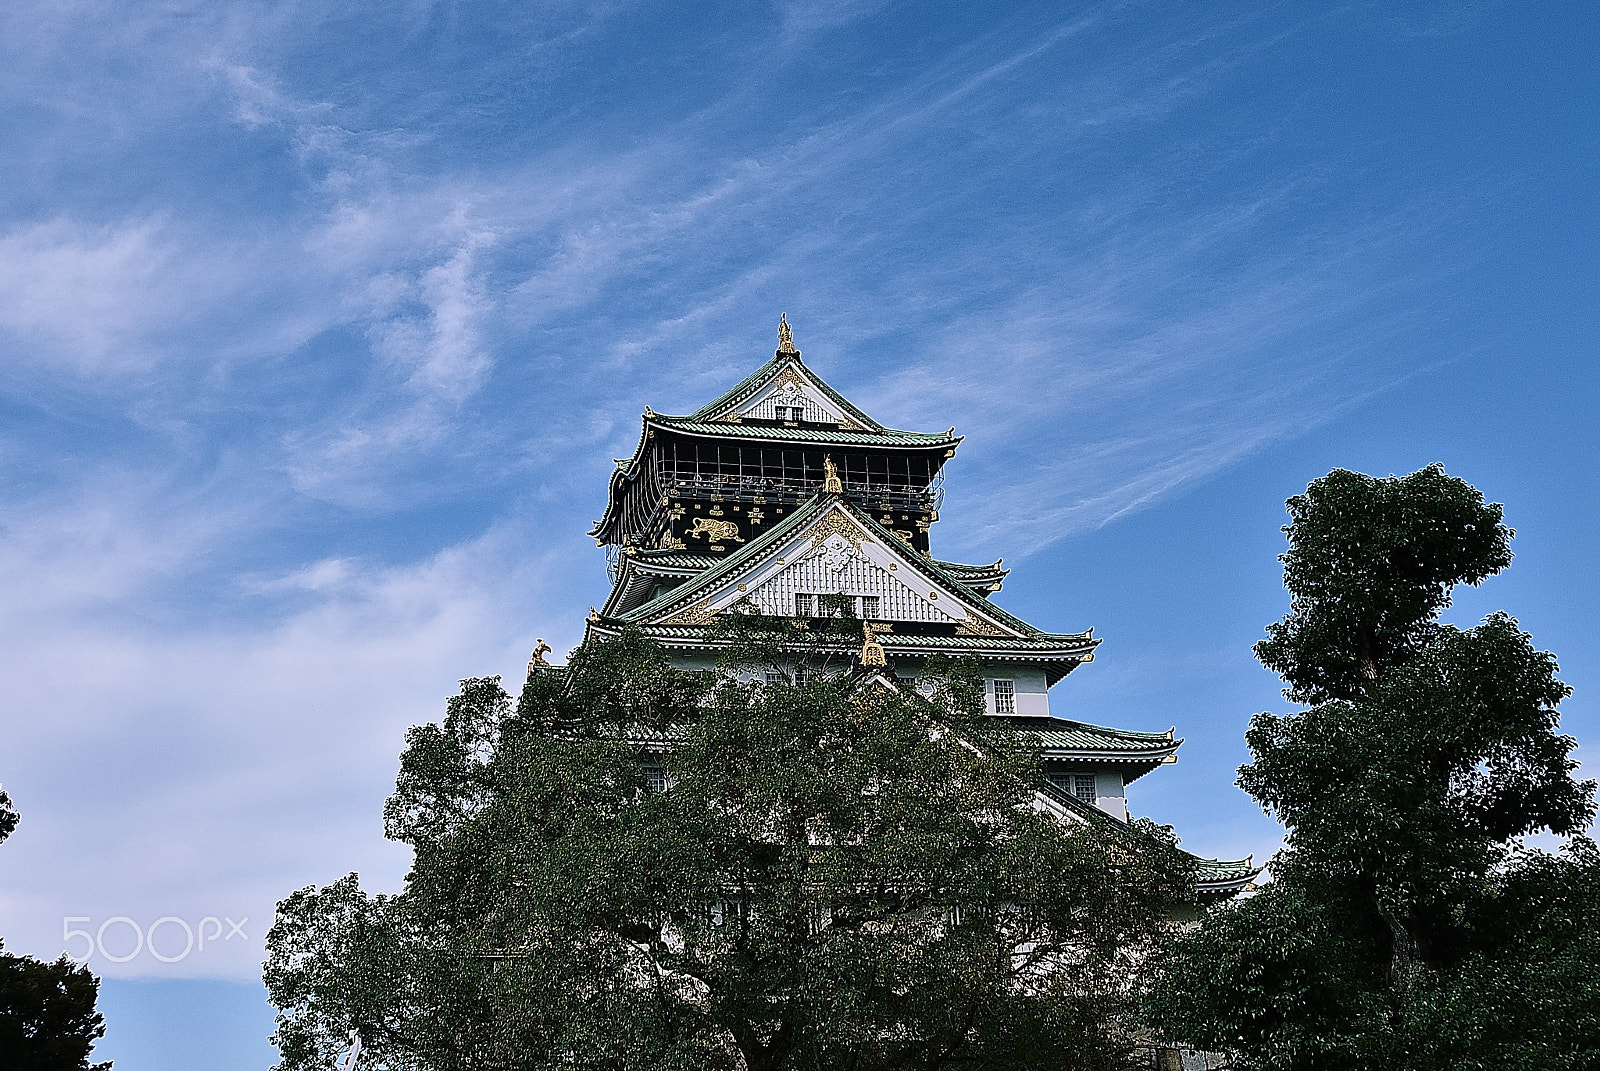 Nikon D200 + Nikon AF-S Nikkor 28-300mm F3.5-5.6G ED VR sample photo. Osaka castle in autumn photography